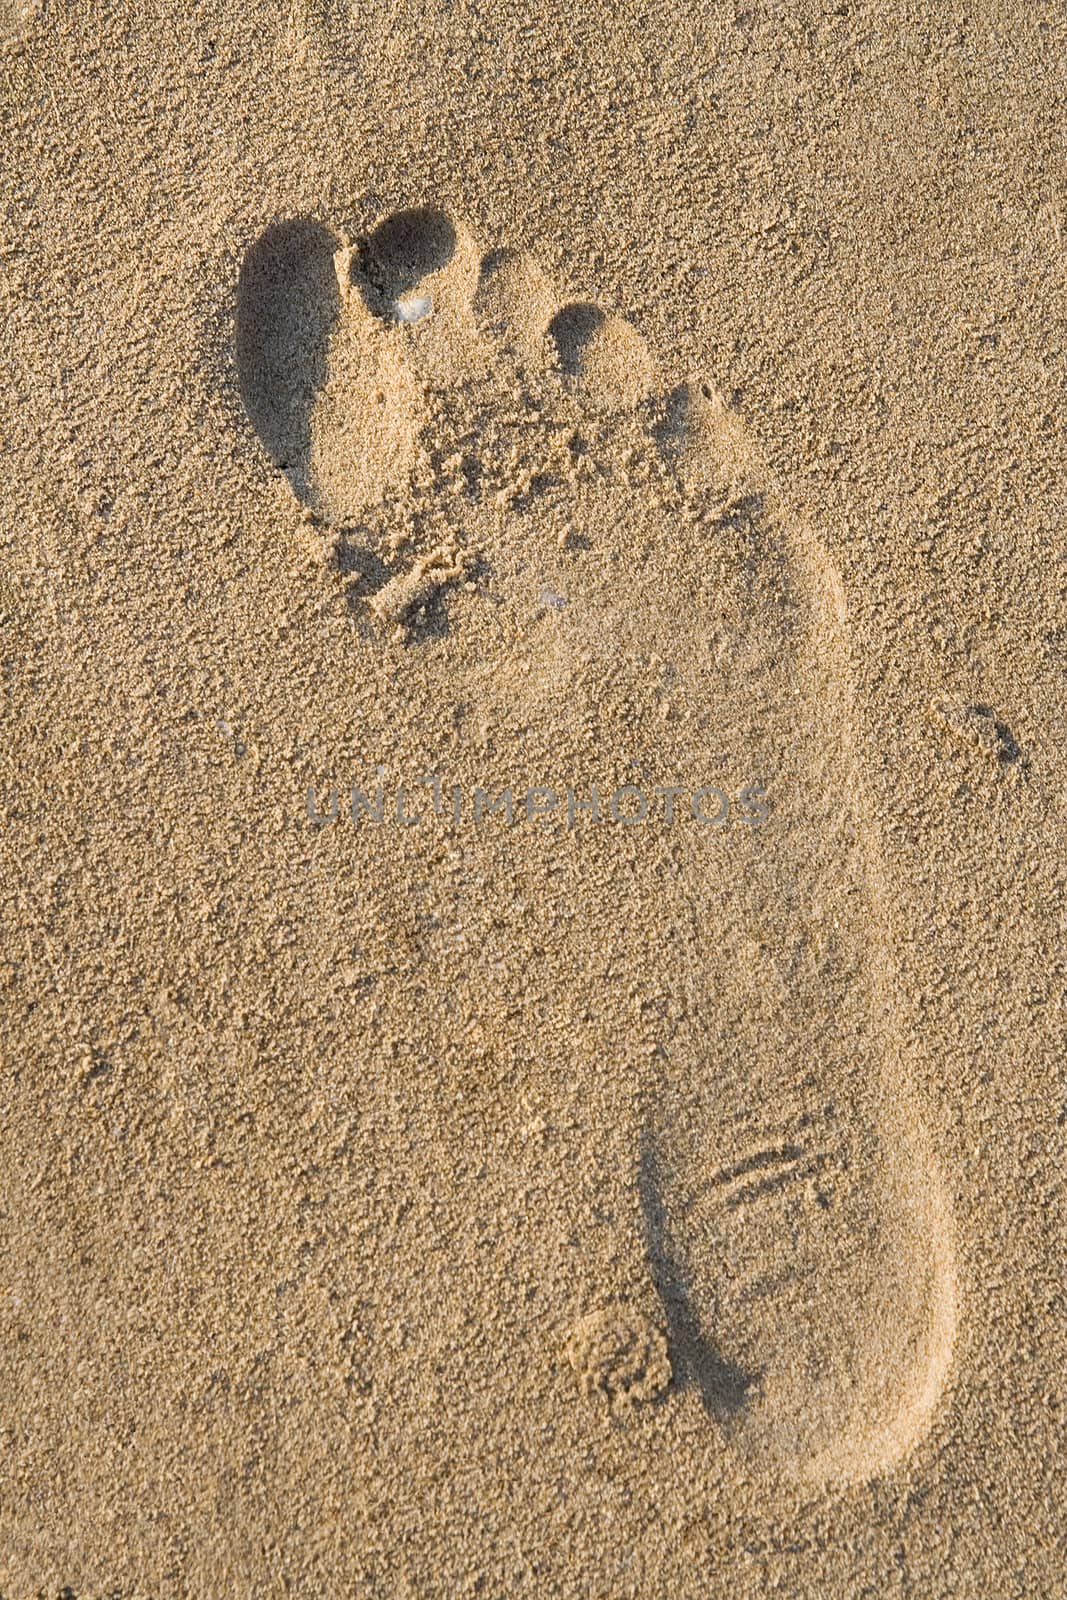 Footprint by Sergius